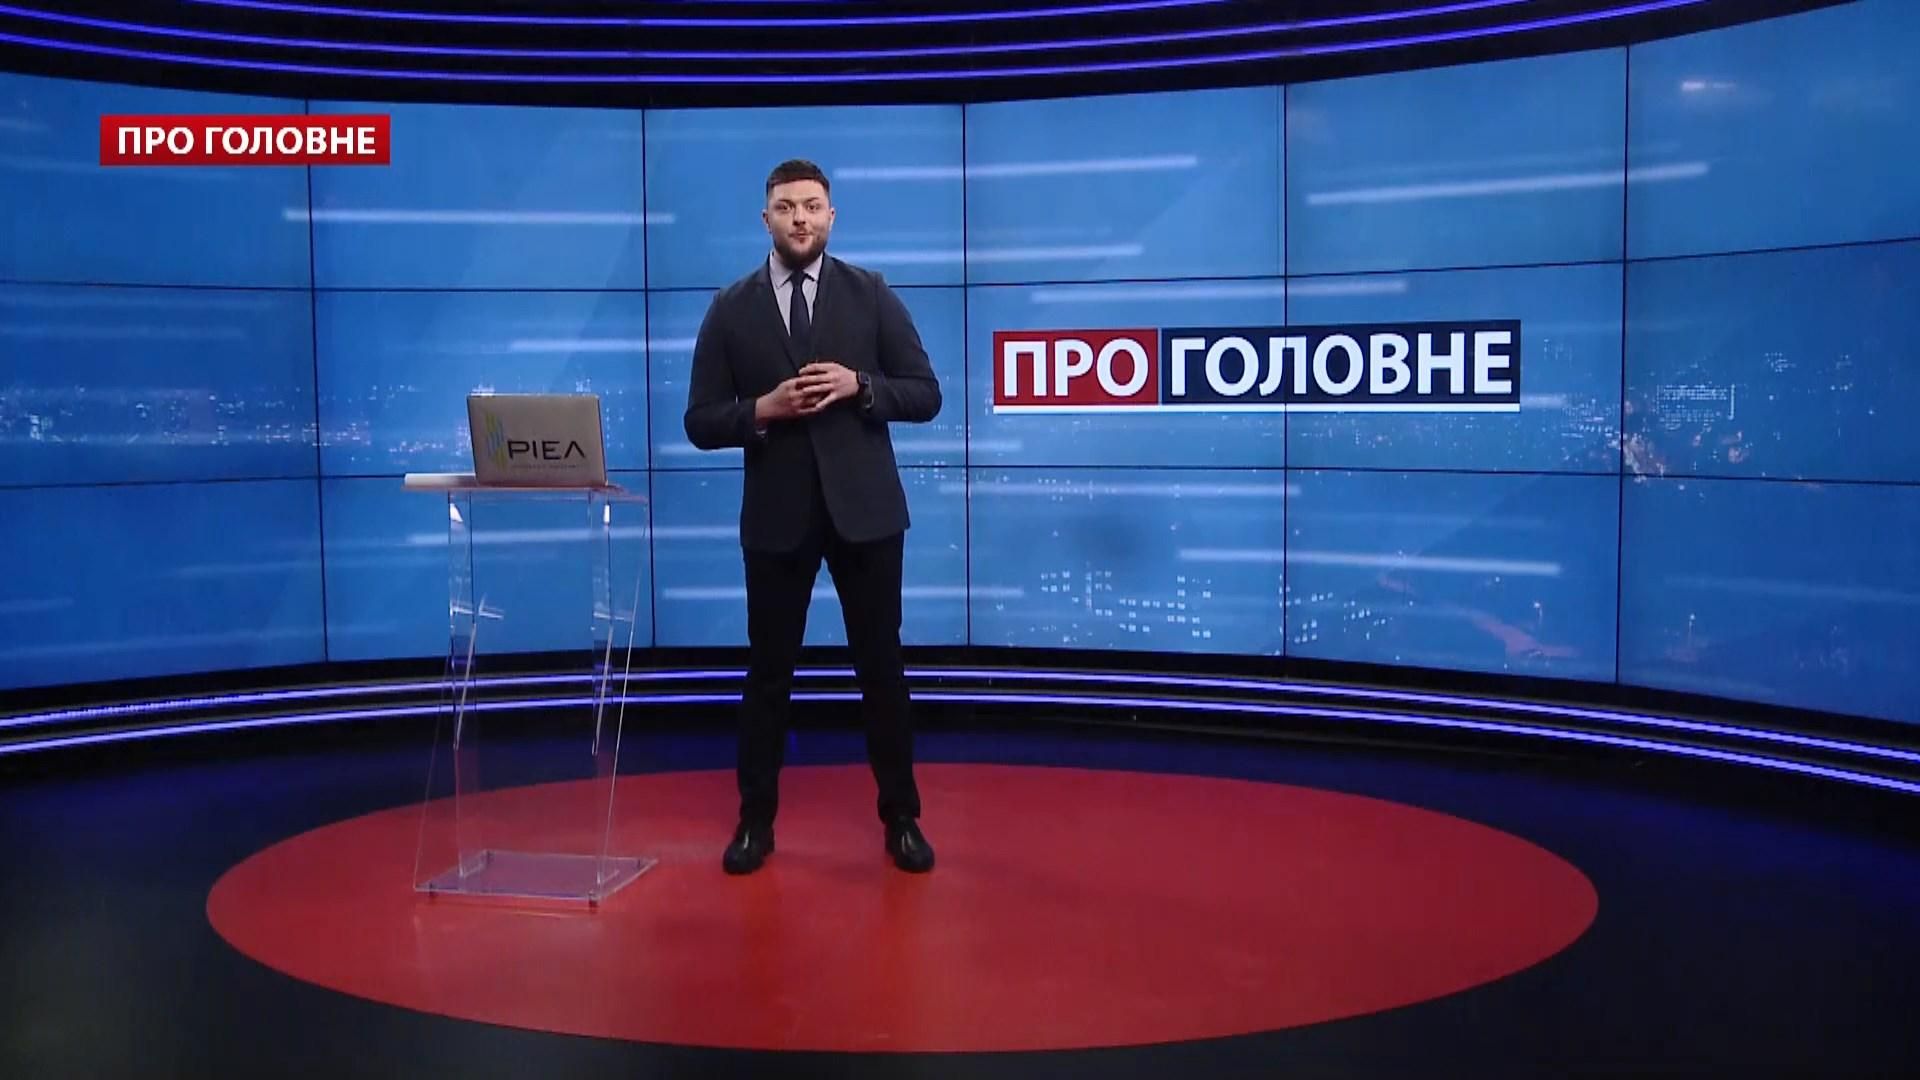 Про головне: Намагання Росії розколоти Захід. Шанс на владу для Тимошенко